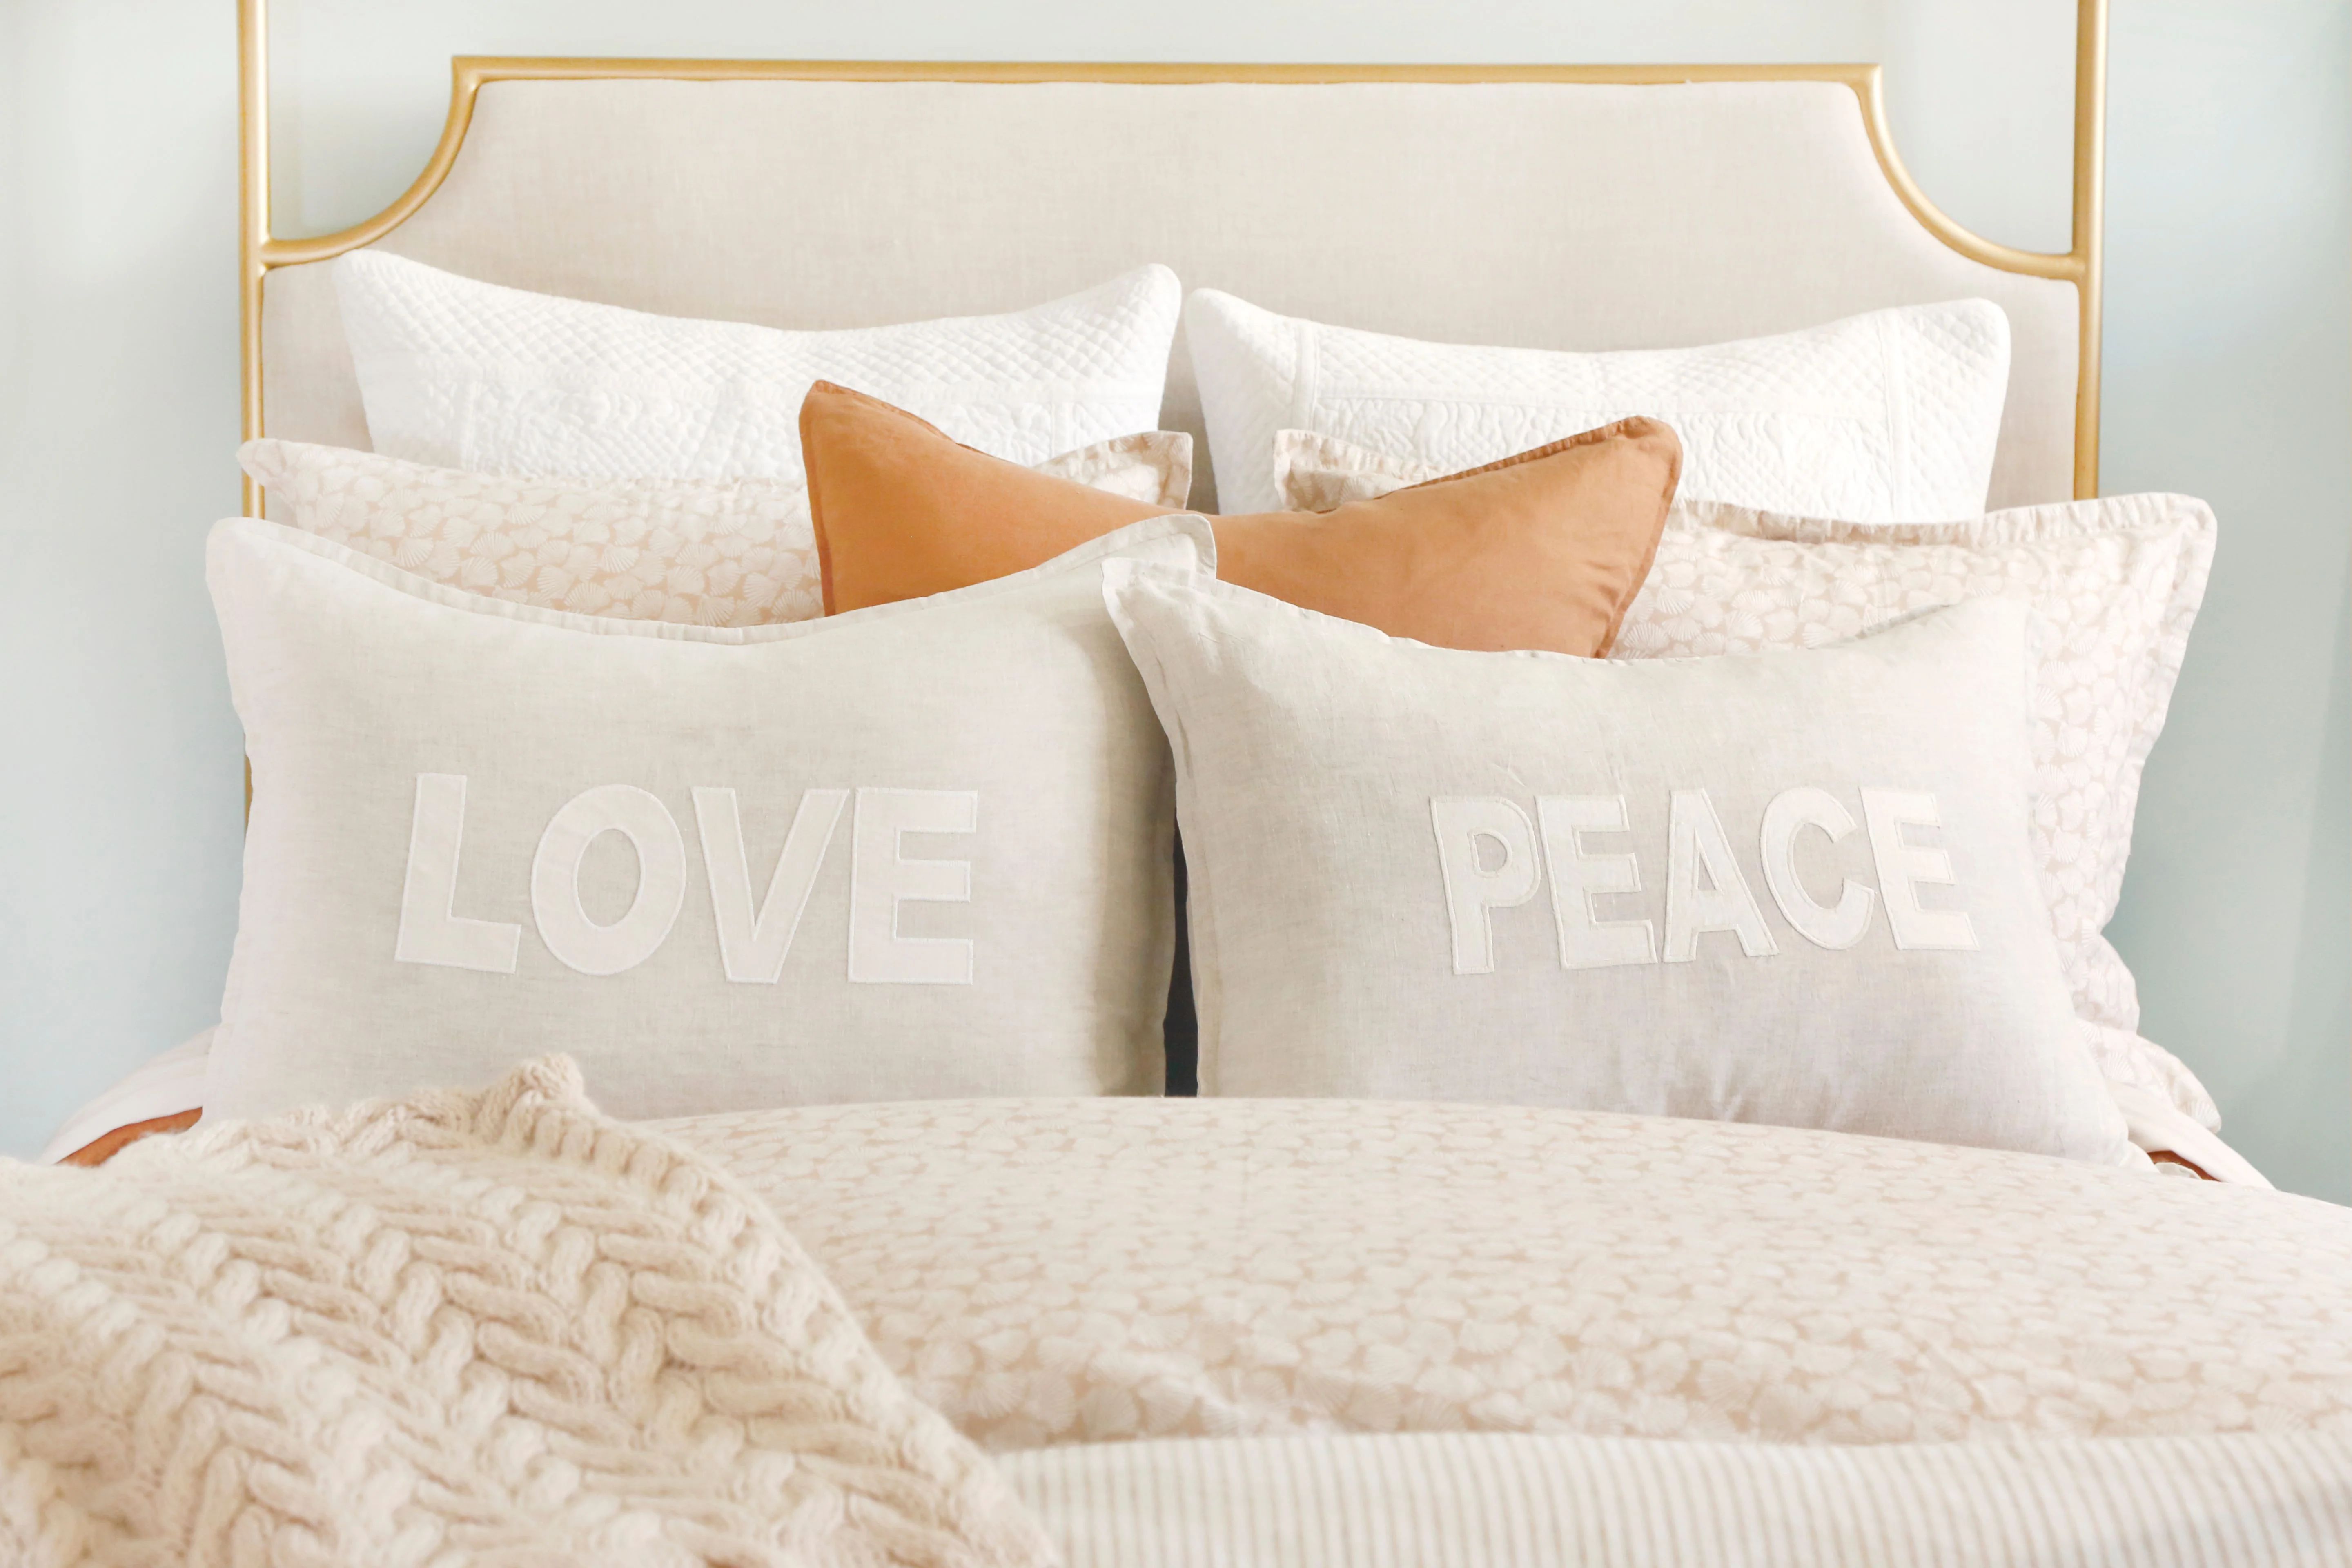 Love & Peace Pillows | Pom Pom at Home